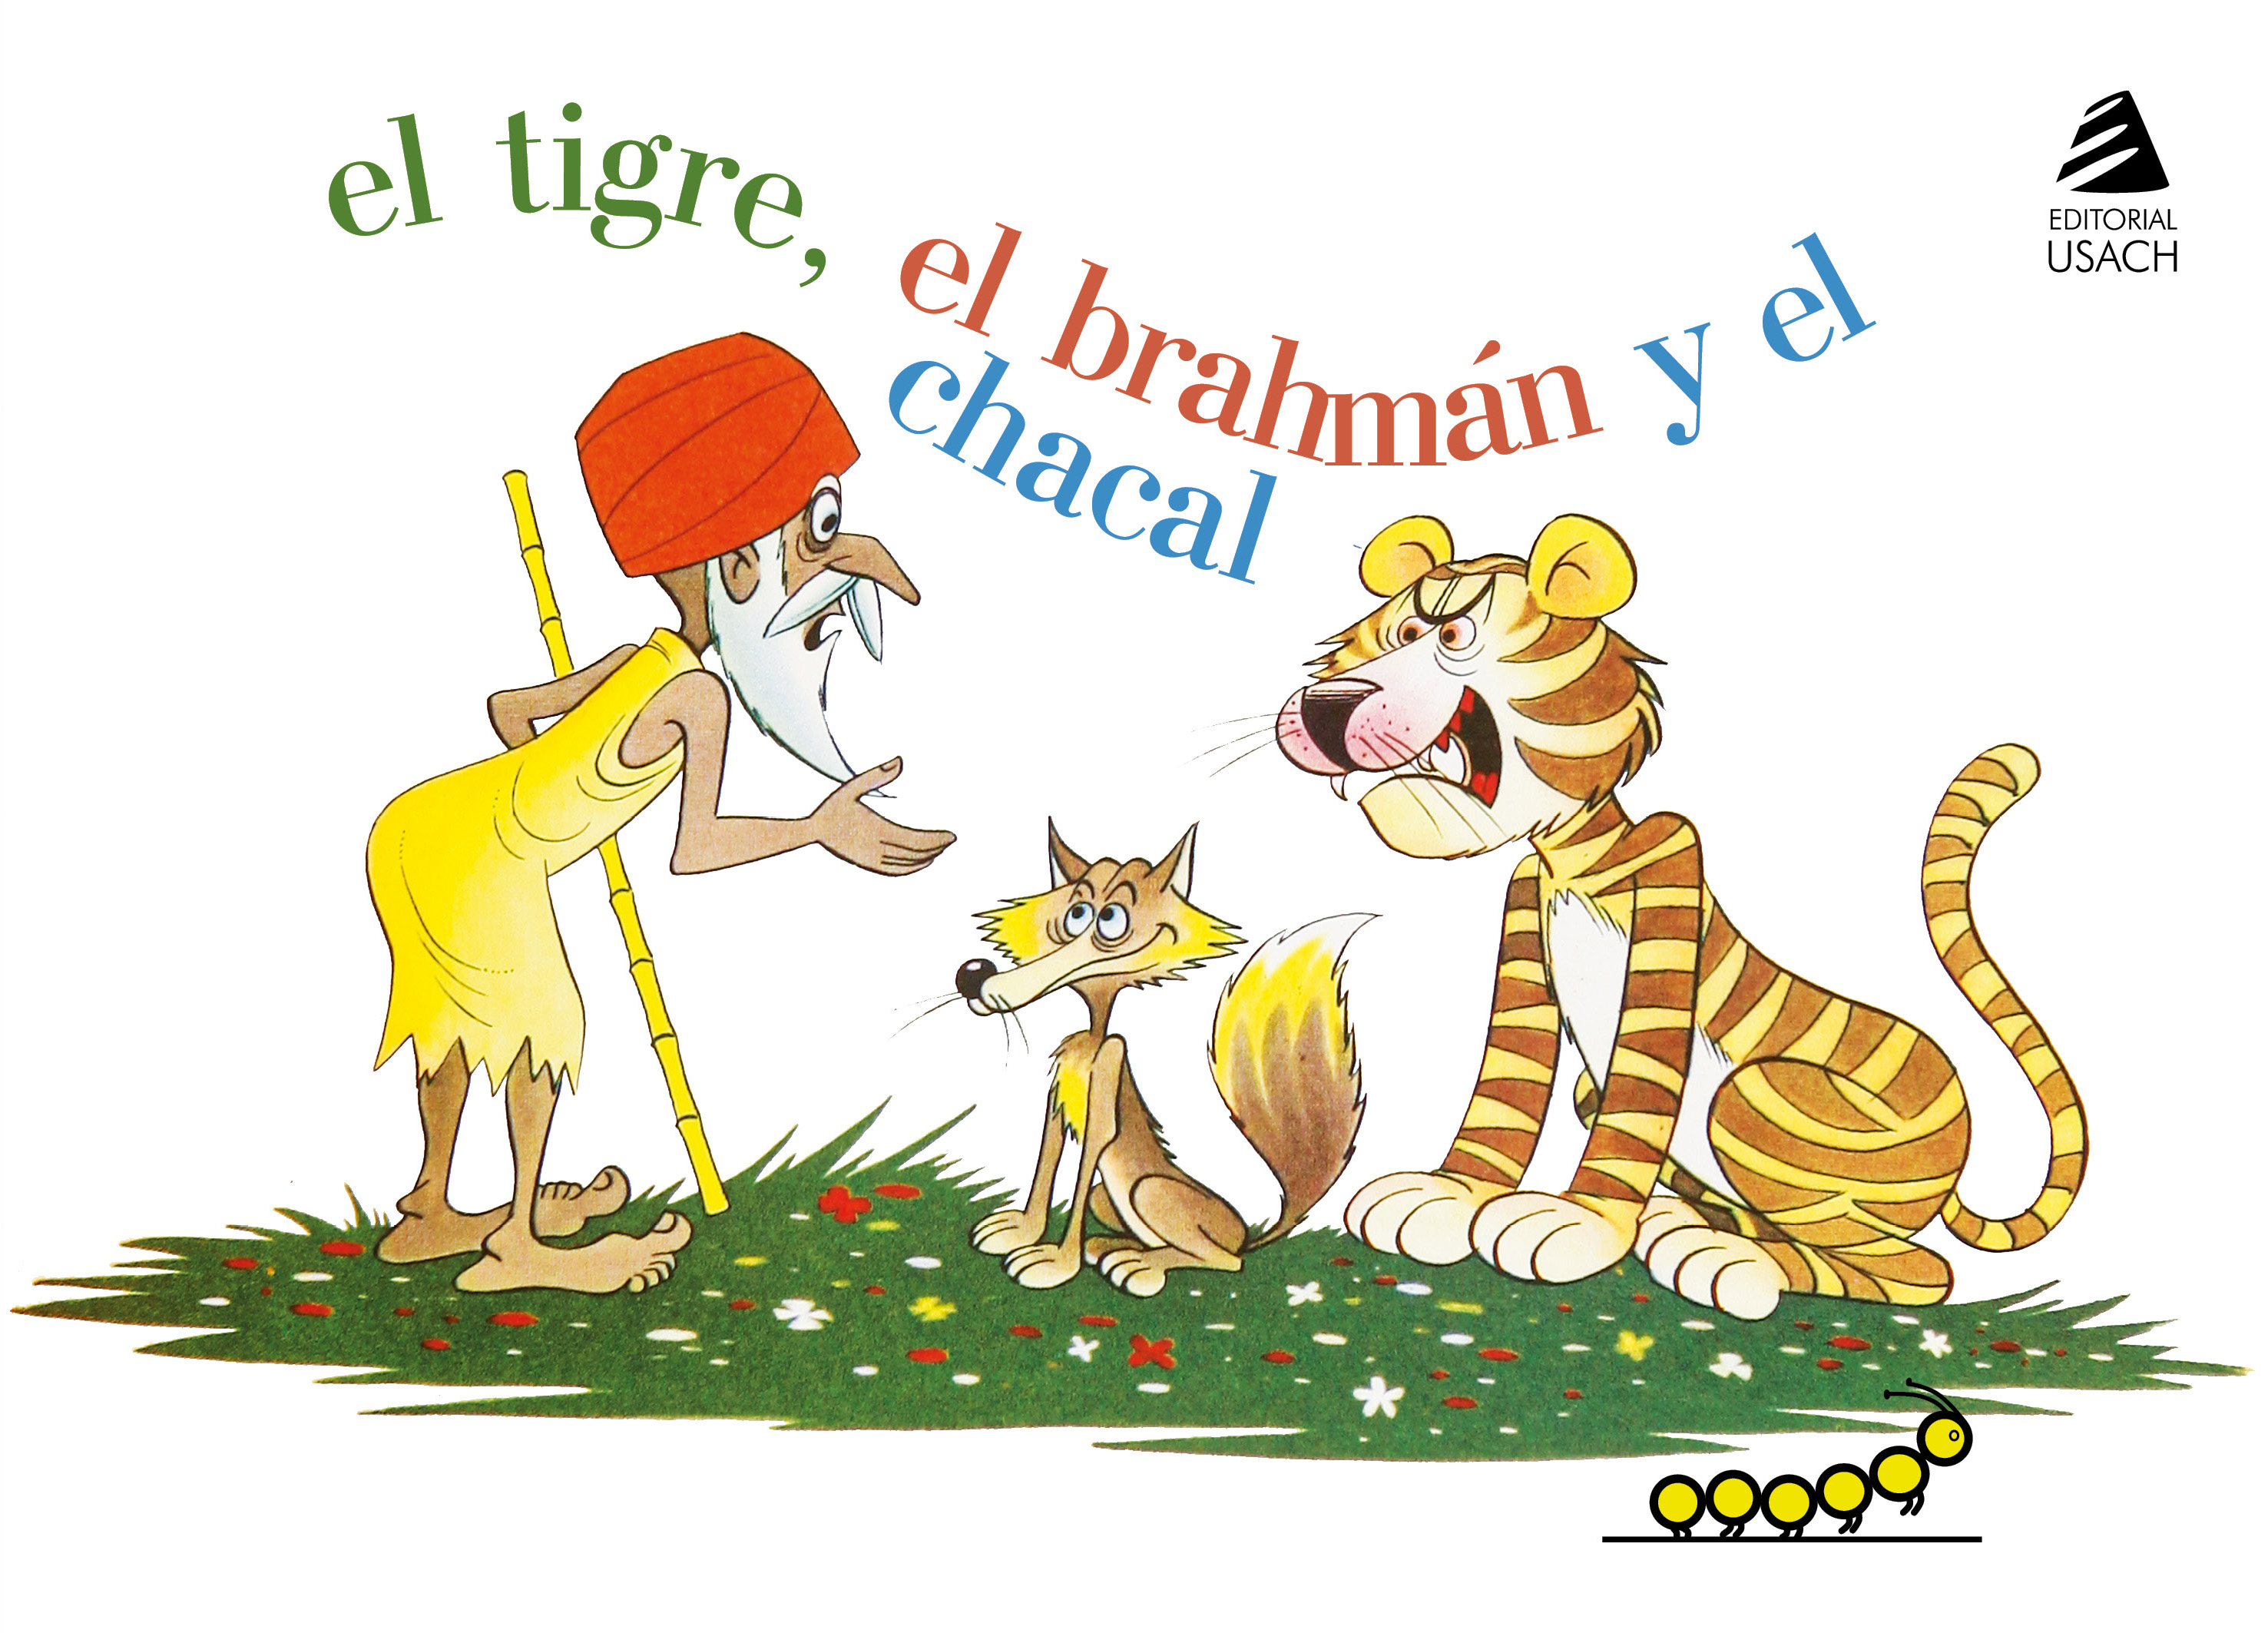 El tigre, el brahmán y el chacal